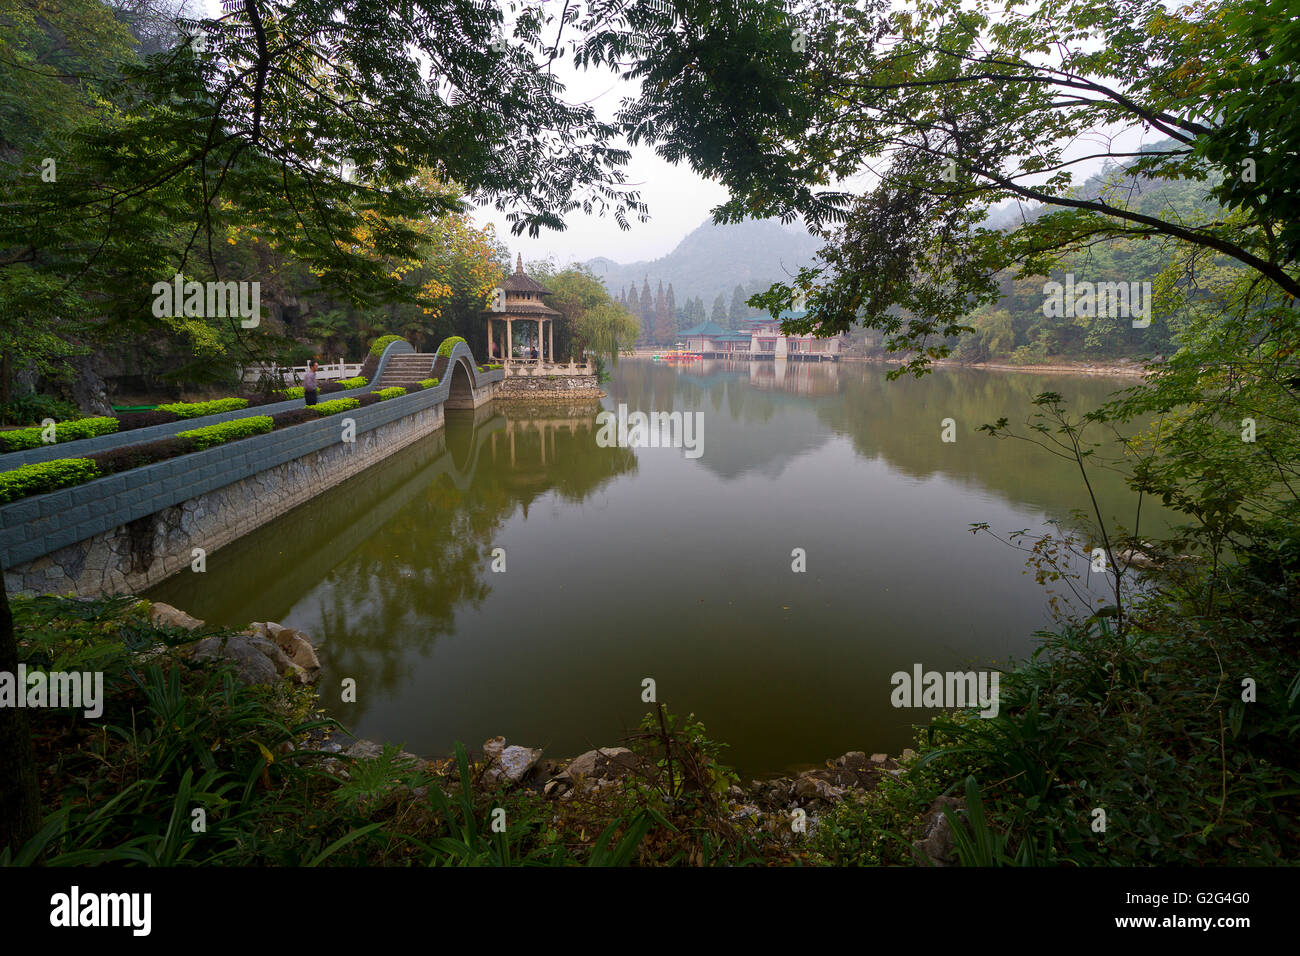 Pagoda sur étang entouré d'arbres, Guilin, Chine Banque D'Images